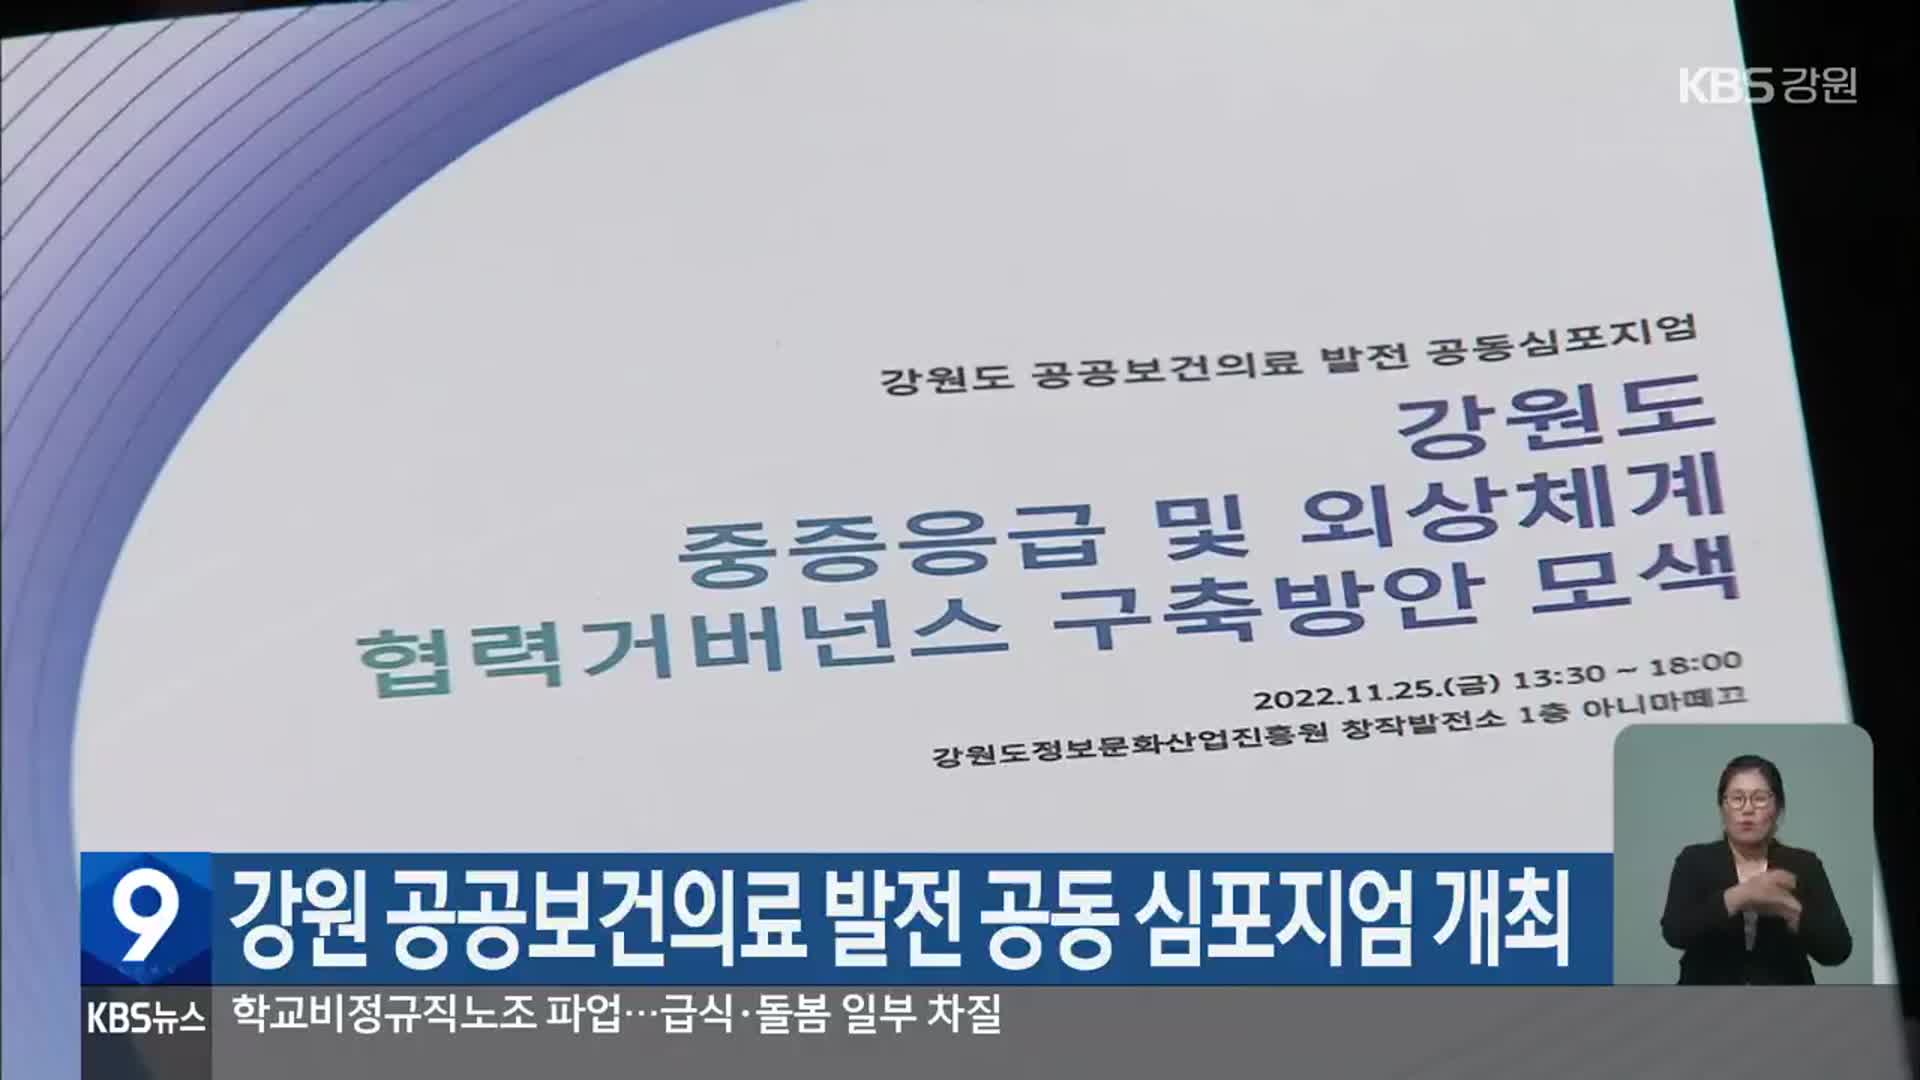 강원 공공보건의료 발전 공동 심포지엄 개최